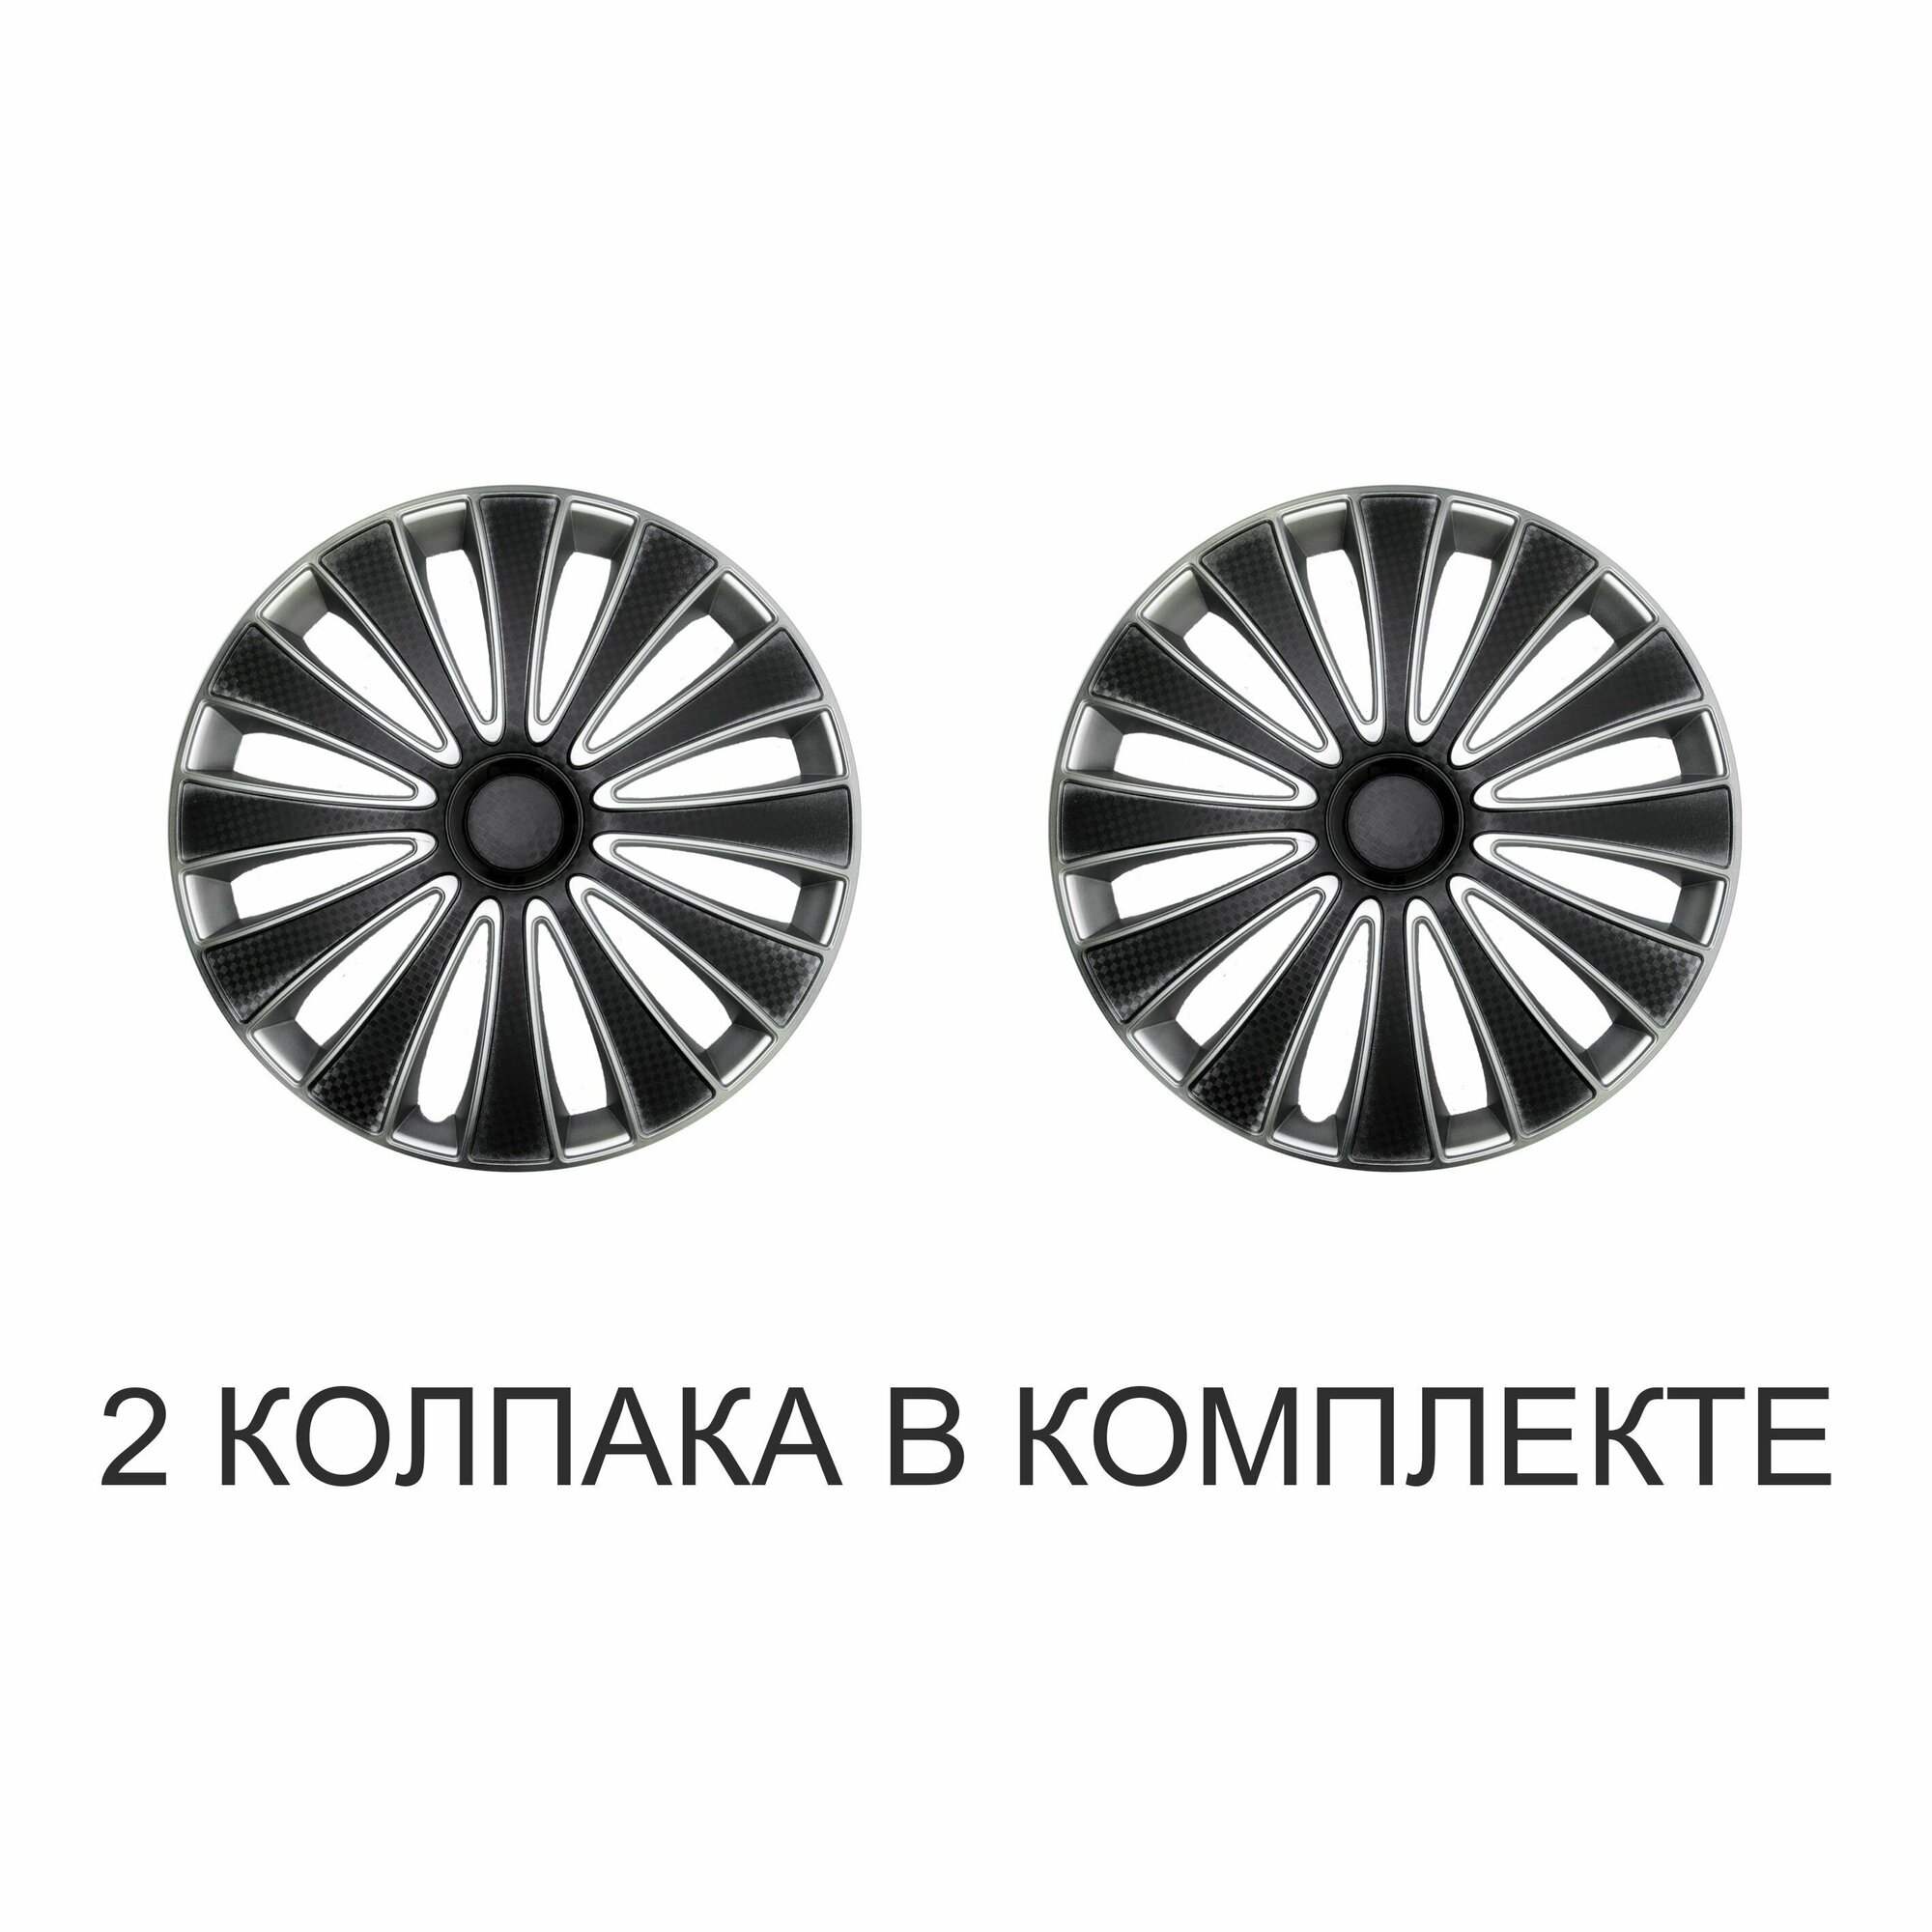 Колпаки на колеса STAR GMK SUPER BLACK R15 комплект 2шт на диски радиус 15 легковой авто цвет черный серый карбон.